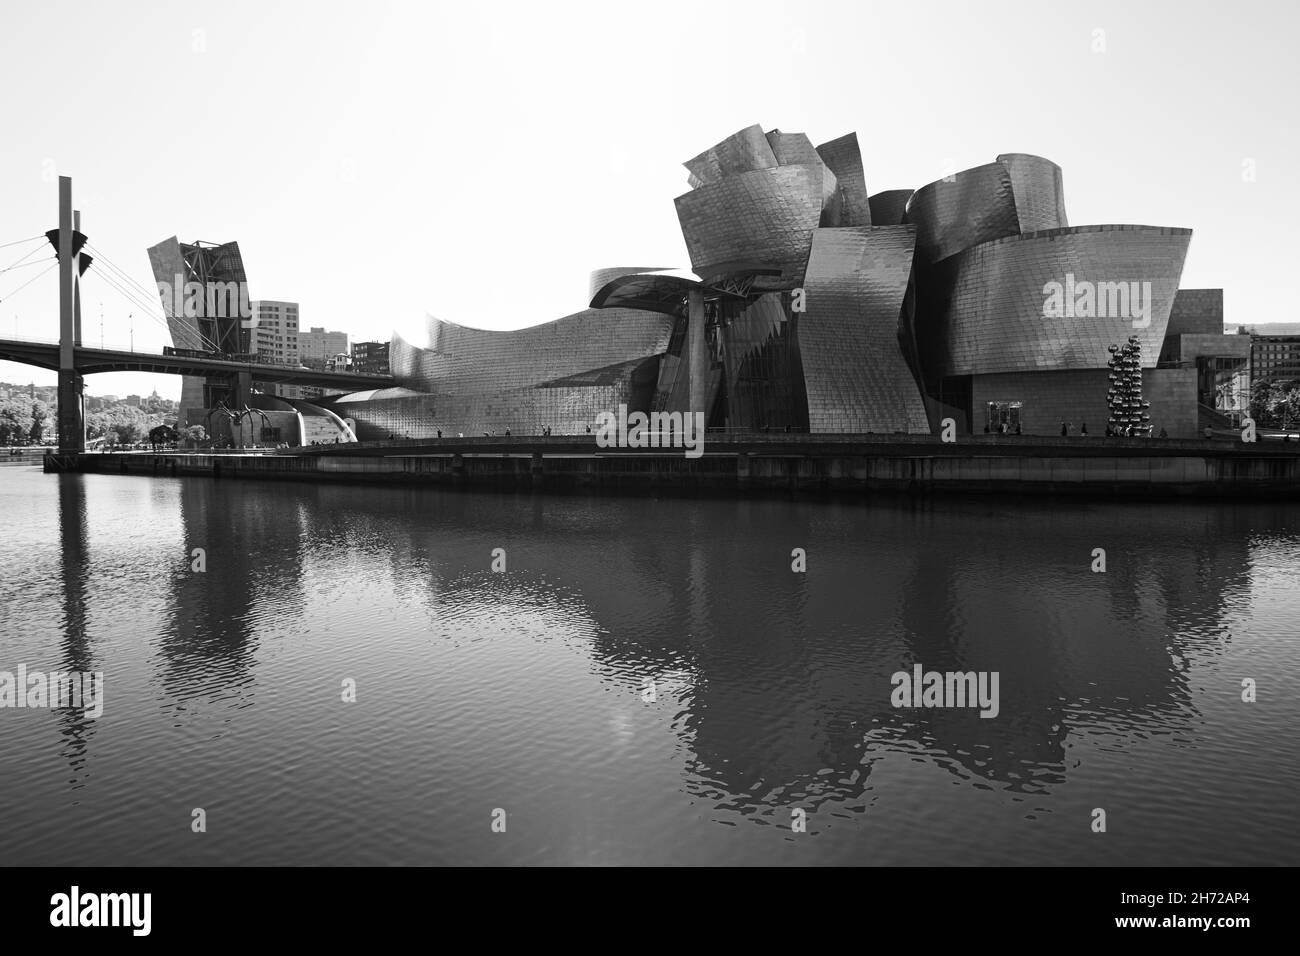 BILBAO, ESPAGNE - 20 octobre 2021 : photo en niveaux de gris du musée Guggenheim de Bilbao, Espagne Banque D'Images